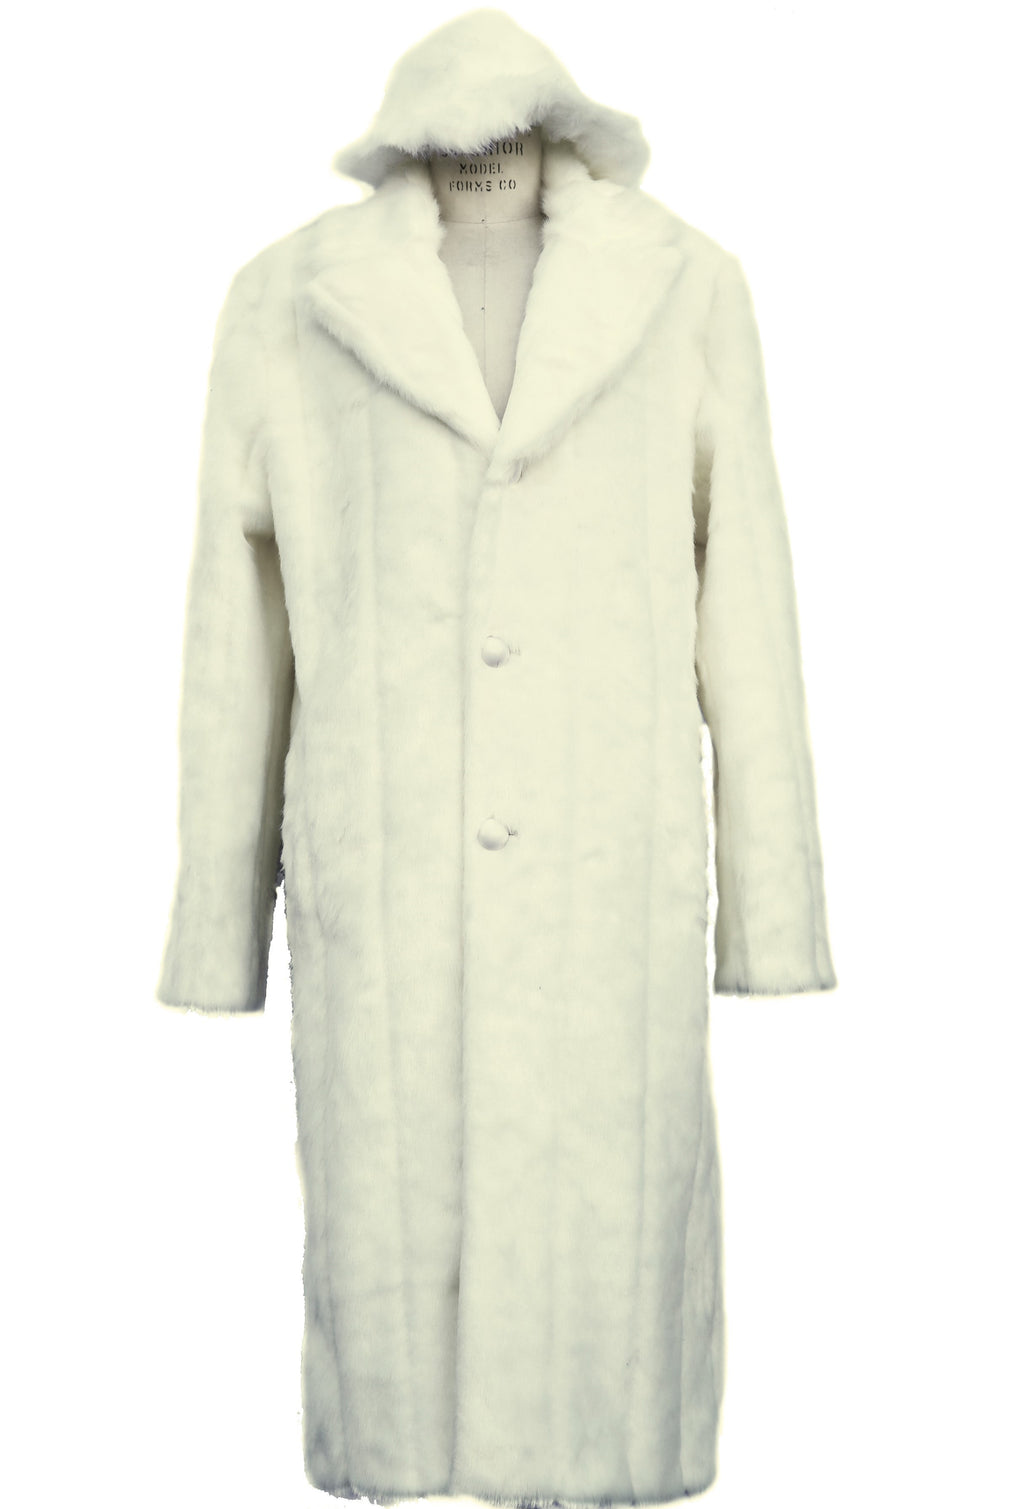 WINTER SPECIAL: FREE FUR HAT + Faux Arctic Fur Coat Buttoned 1pc Long Zoot Suit - Off White